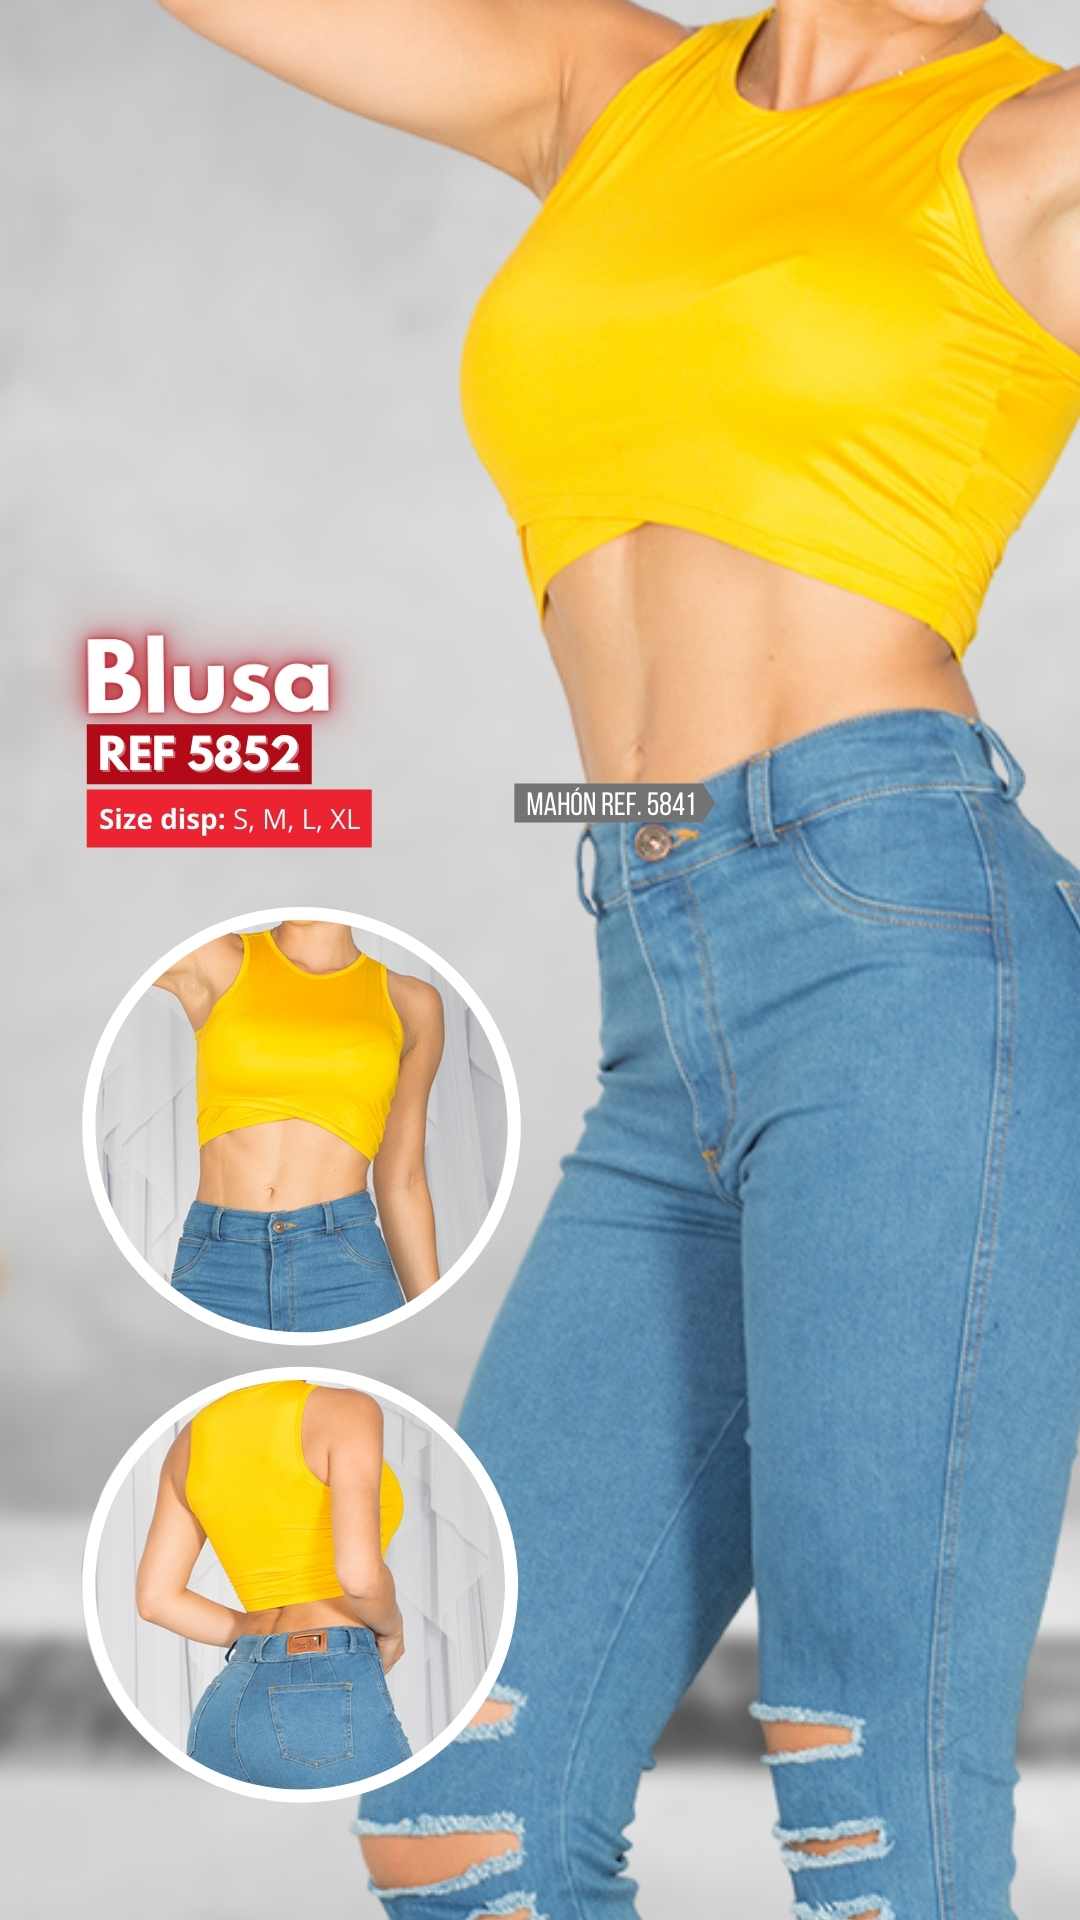 Blusa Ref. 5852